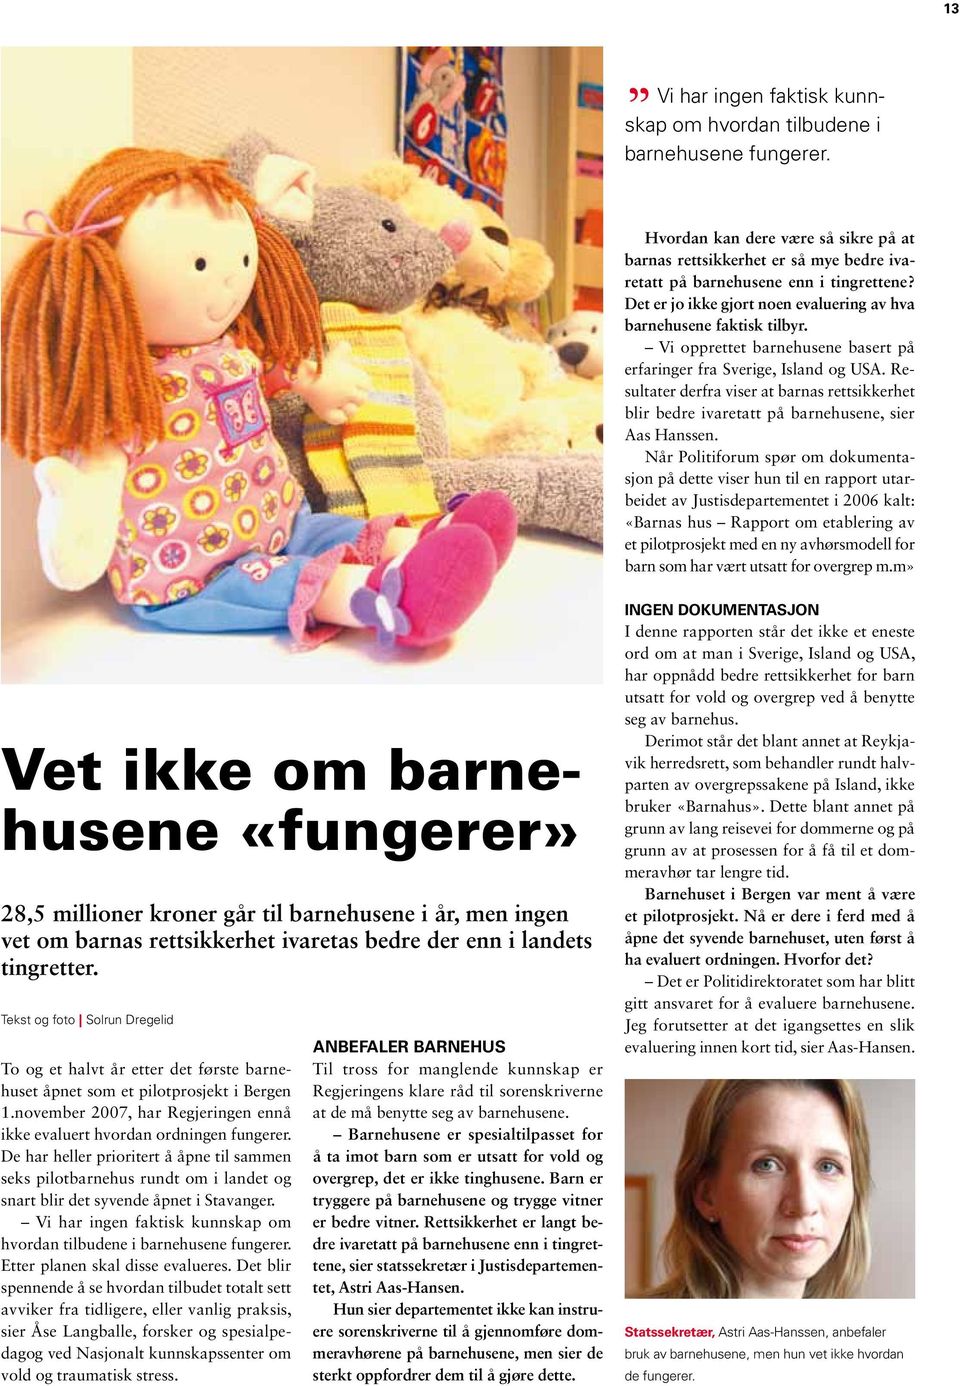 Resultater derfra viser at barnas rettsikkerhet blir bedre ivaretatt på barnehusene, sier Aas Hanssen.